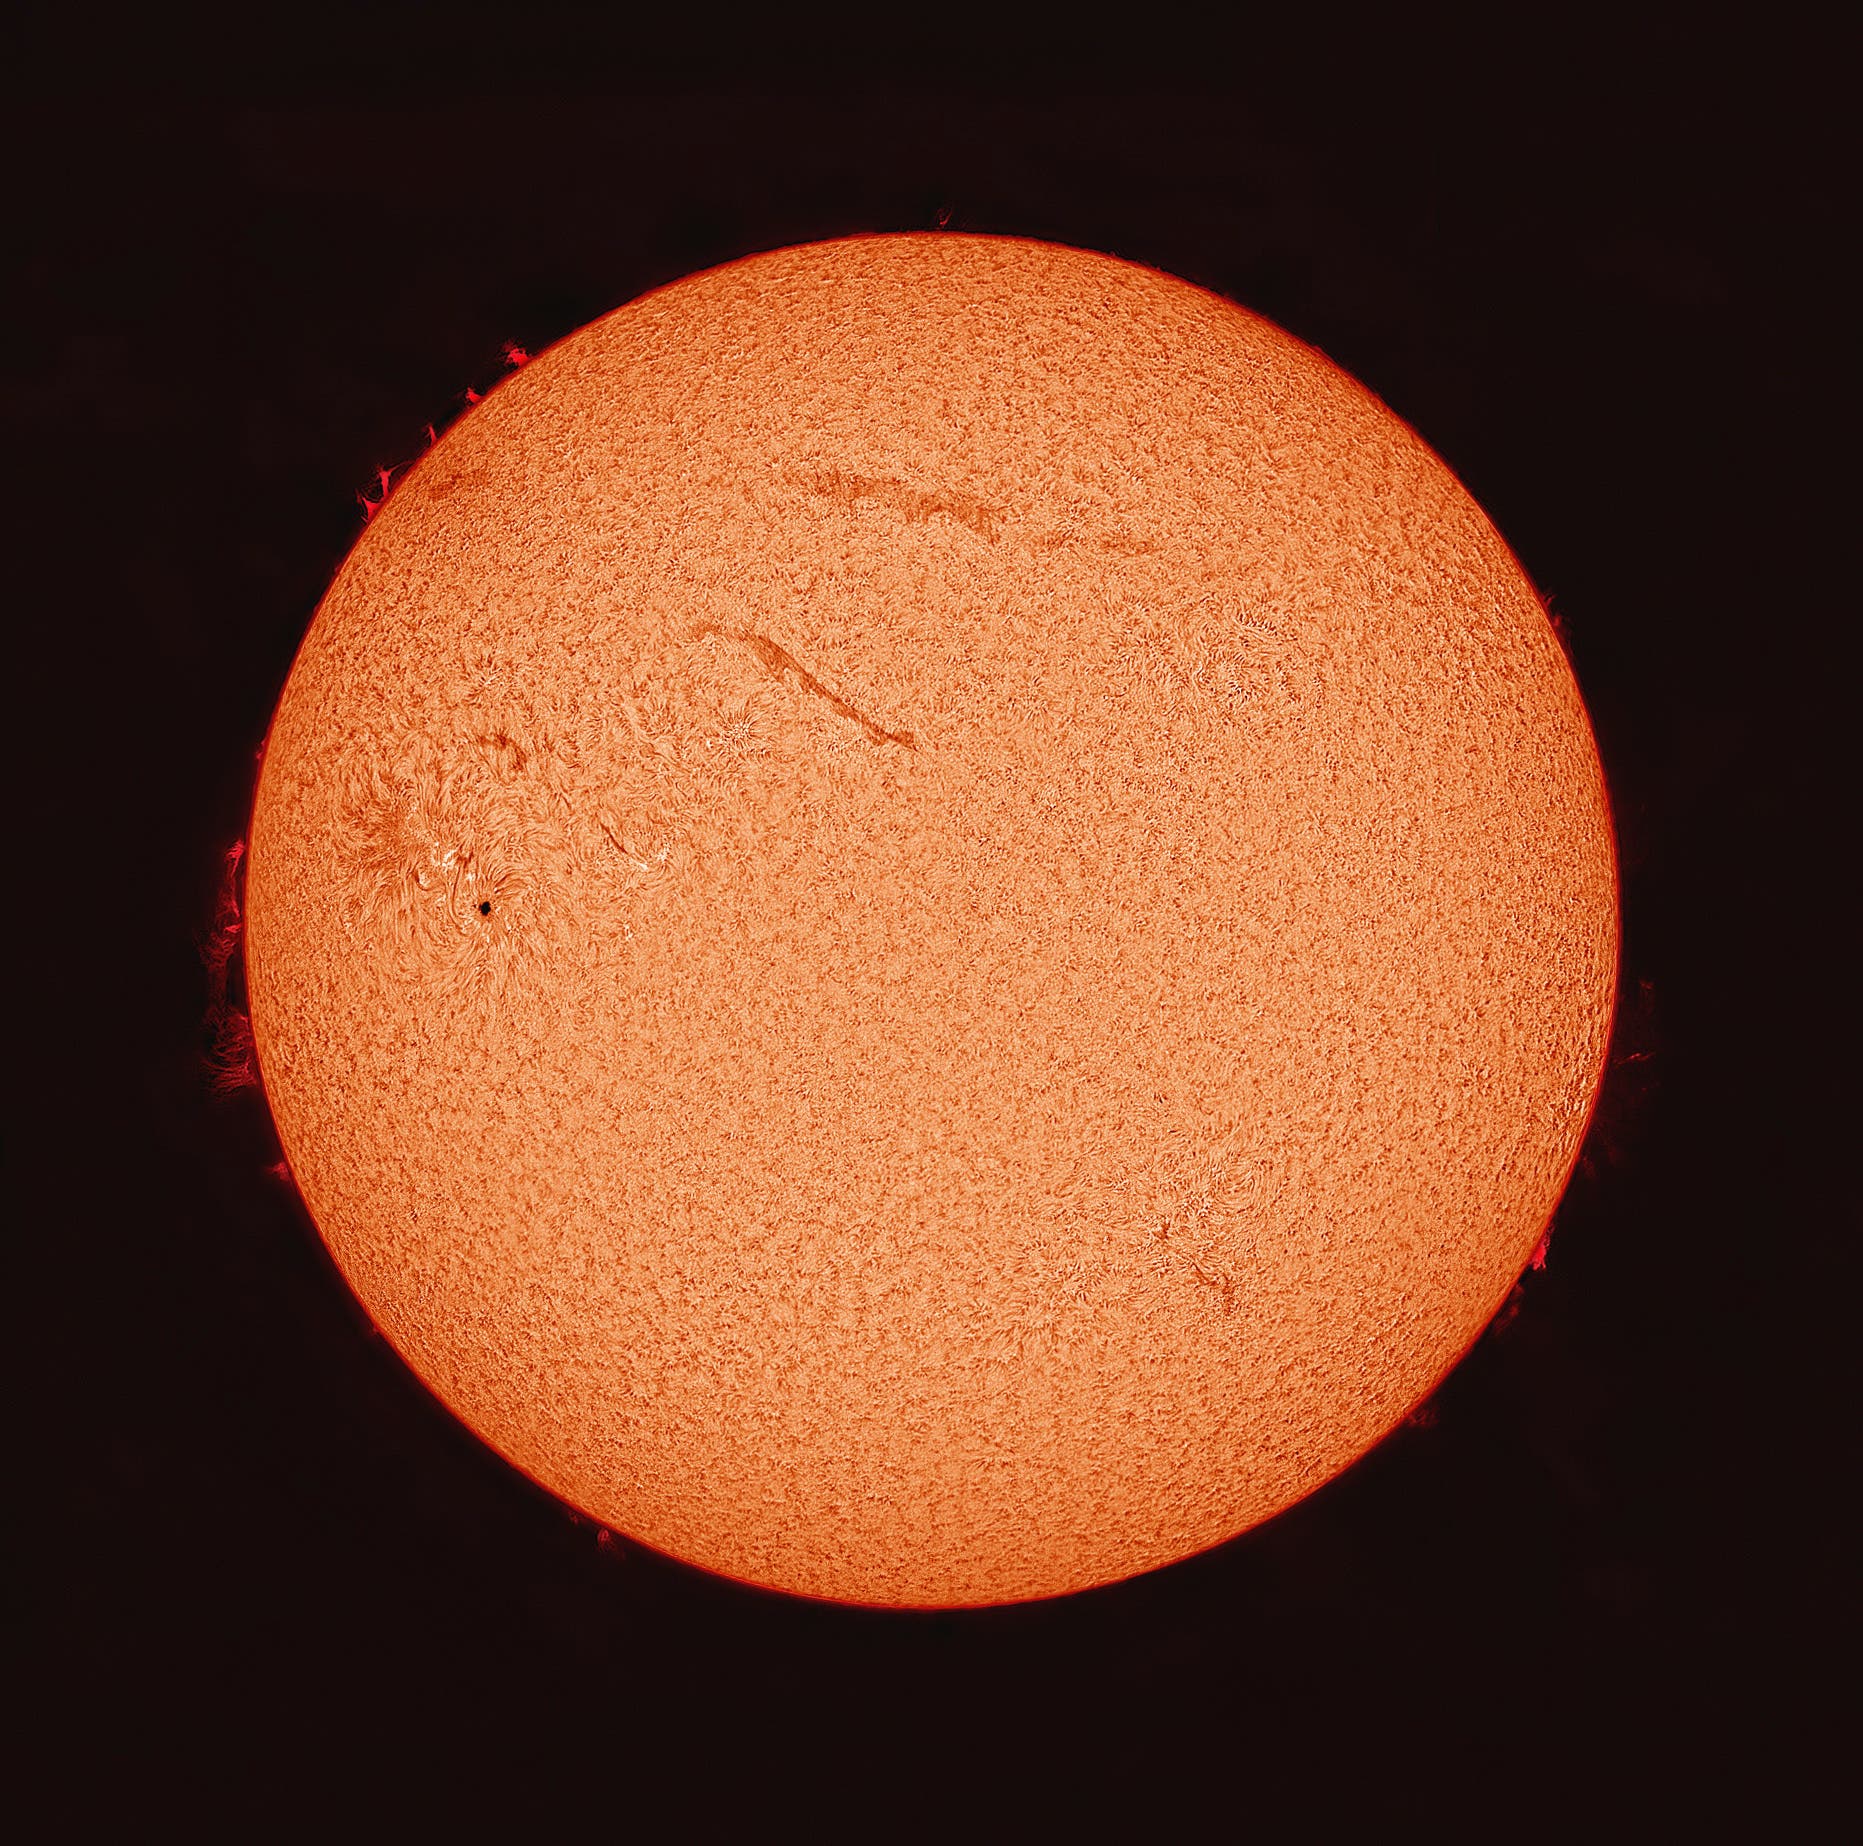 Die Sonne durch einen H-Alpha-Filter